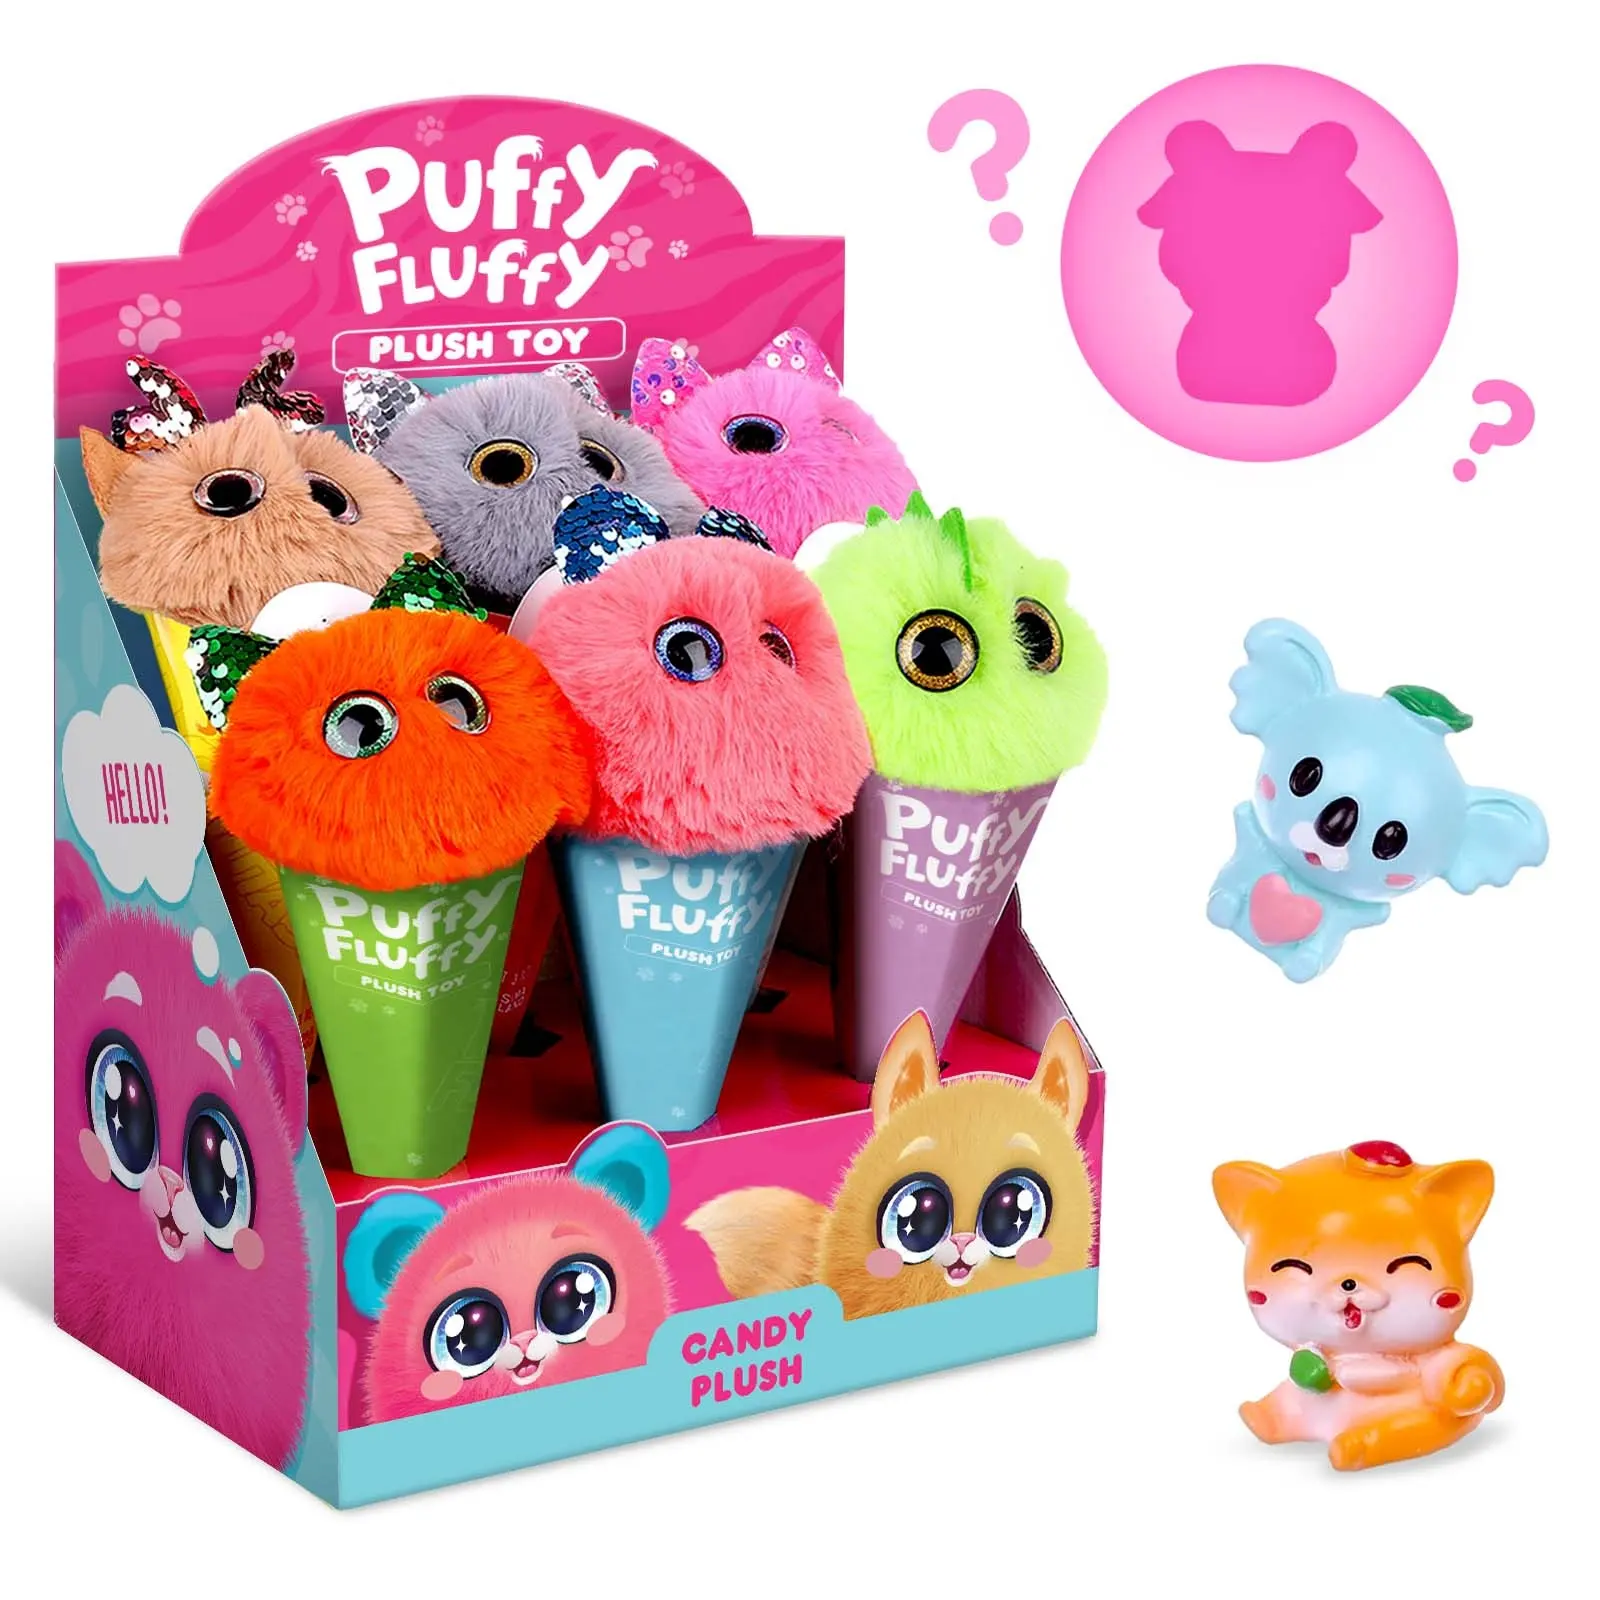 Puffy fluffy Showbox pets 6pcs toys bambini hobby giocattoli classici bambini all'ingrosso giocattolo divertente per bambini immagine tipo di colore